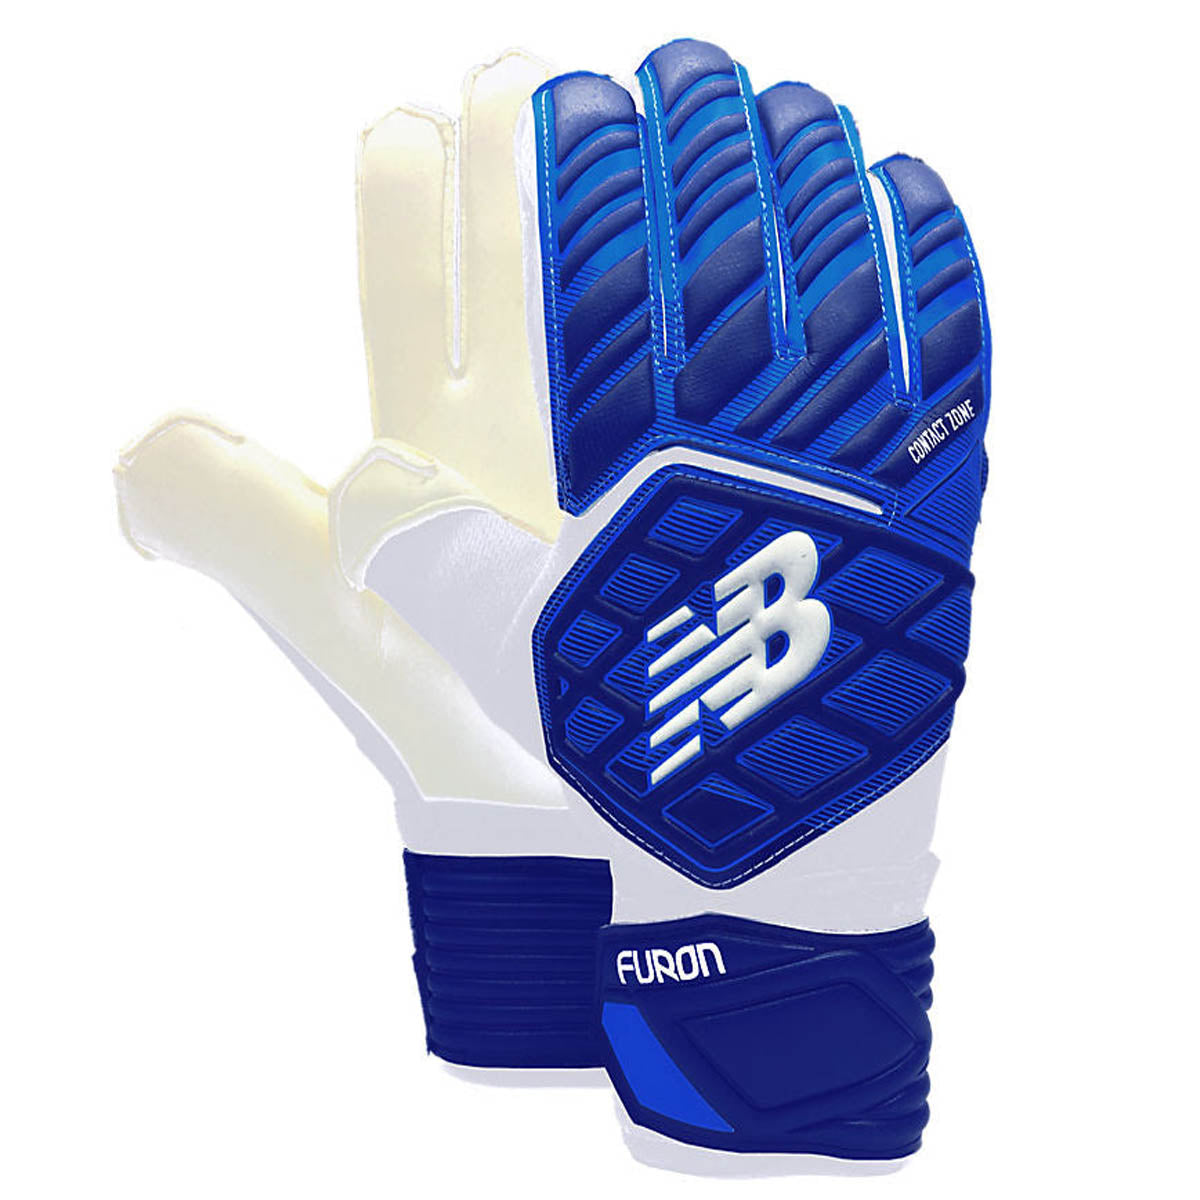 New Balance Unisex Furon Dynamite Replica Gk Gloves Soccer Gloves Goal Kick Soccer 6 Blue/White 